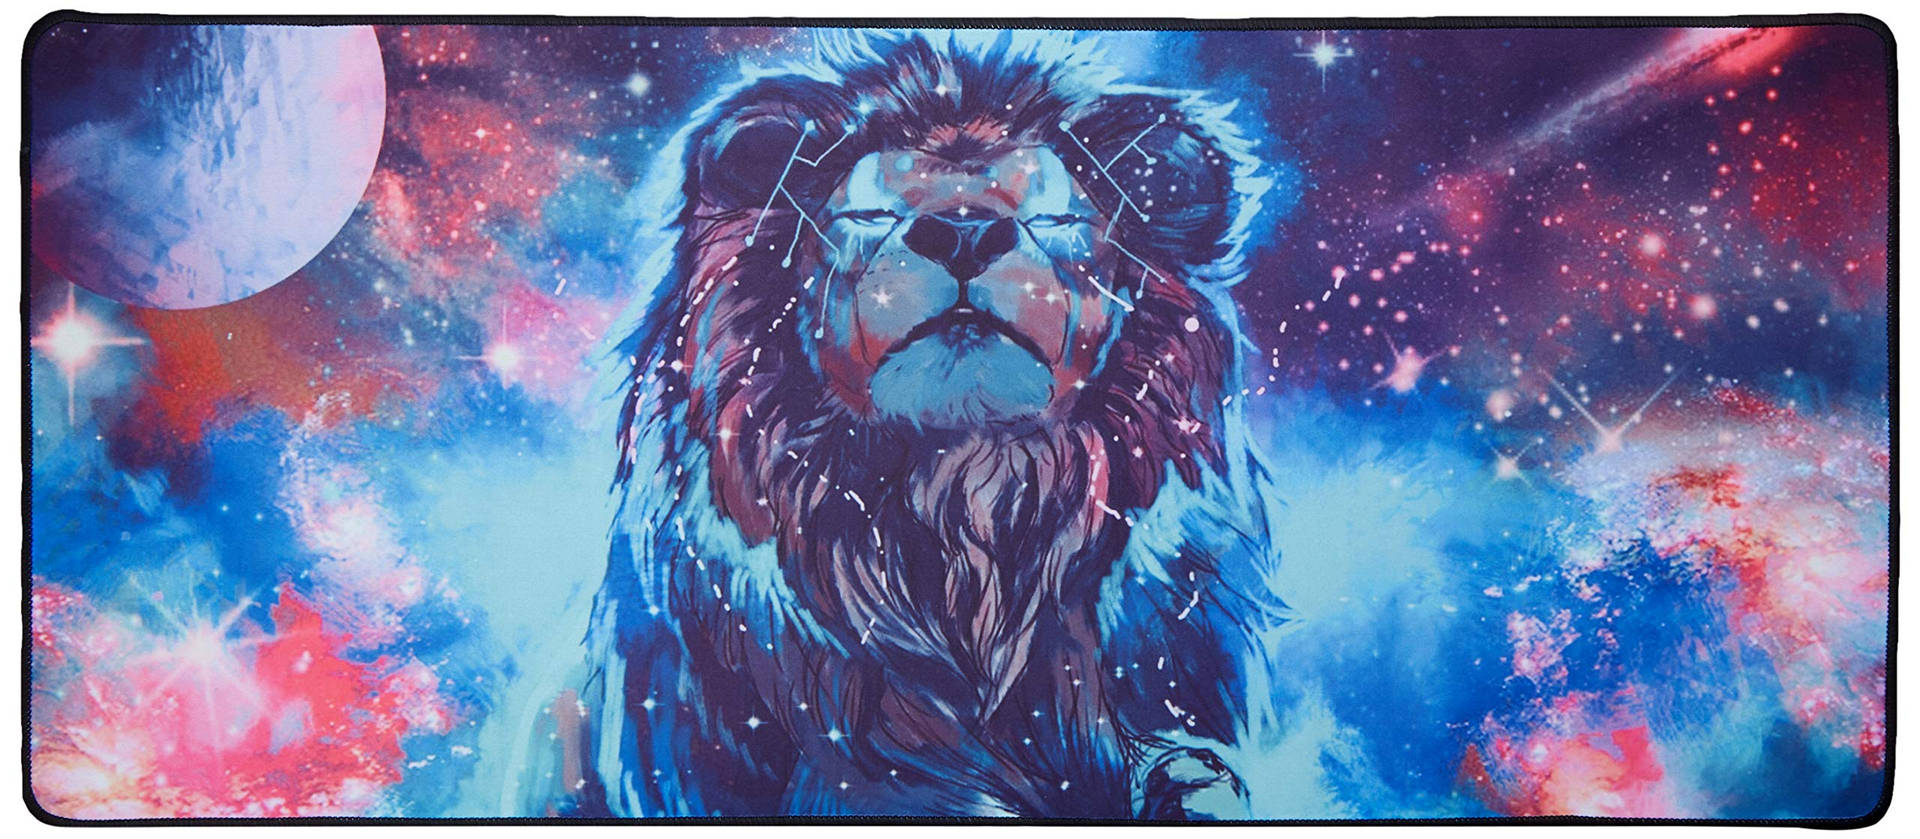 Galaxy Lion Digital Art Background